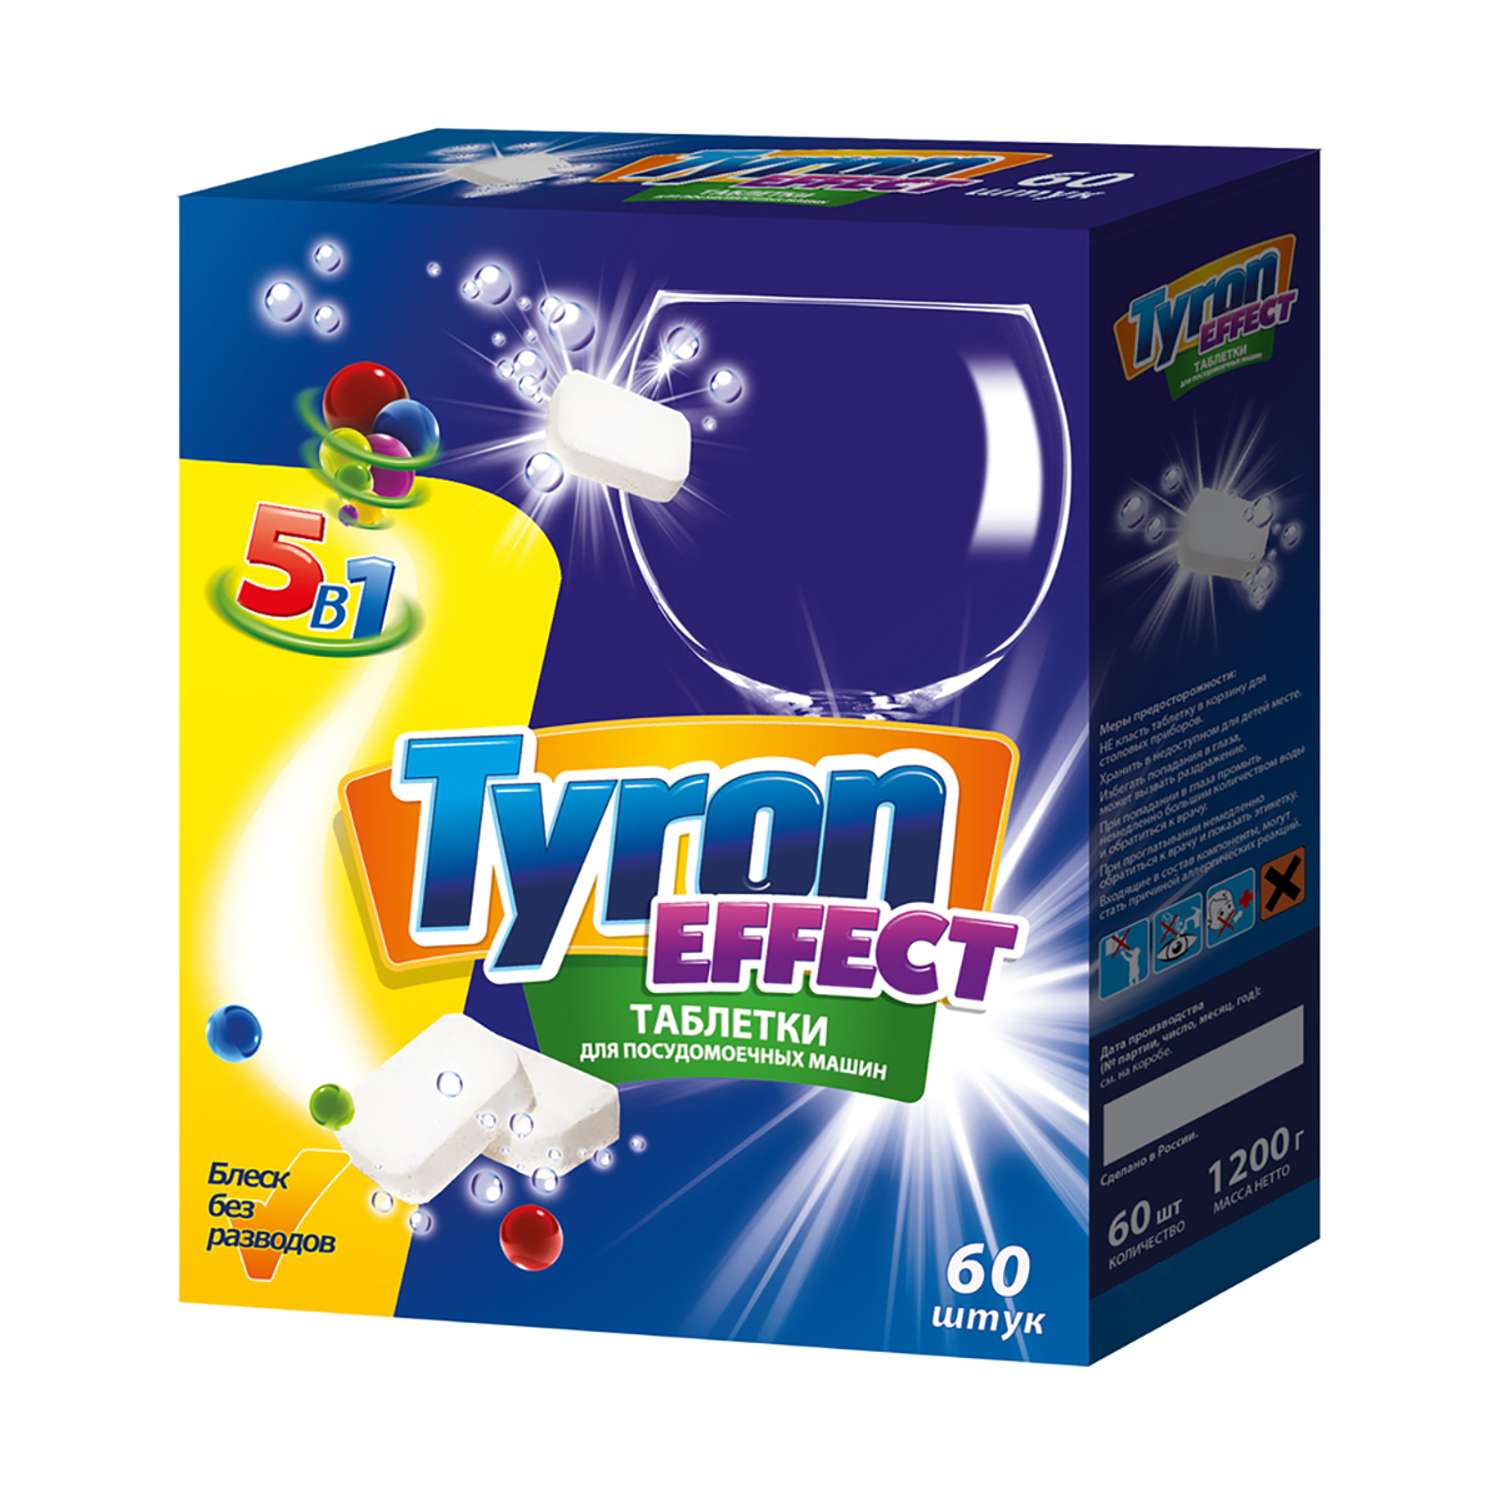 Таблетки Tyron для посудомоечной машины Tyron Effect 5 в 1 60 шт - фото 1